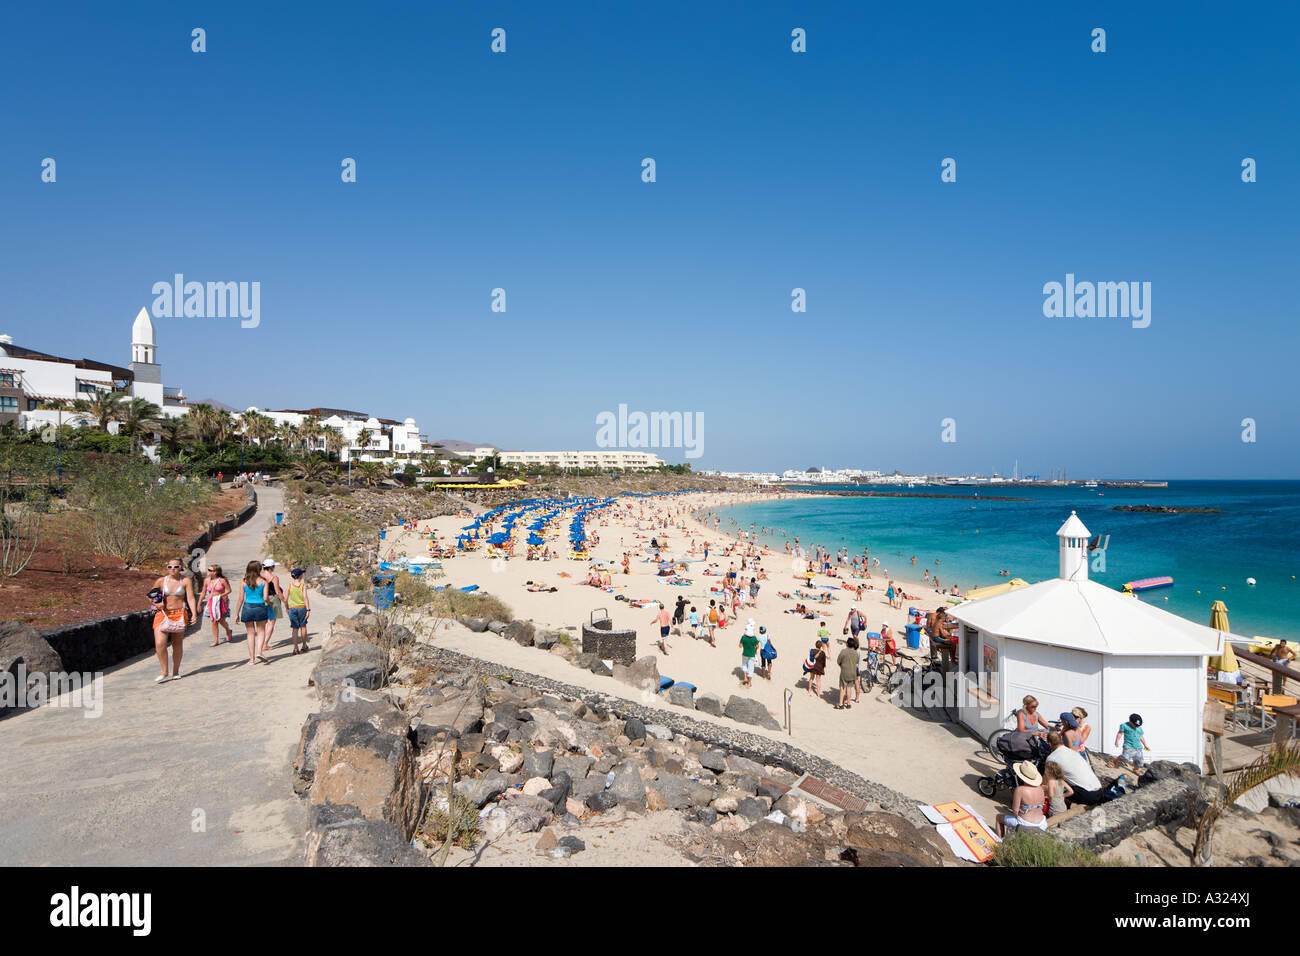 Promenade und Hauptstrand Playa Blanca, Lanzarote, Kanarische Inseln, Spanien Stockfoto